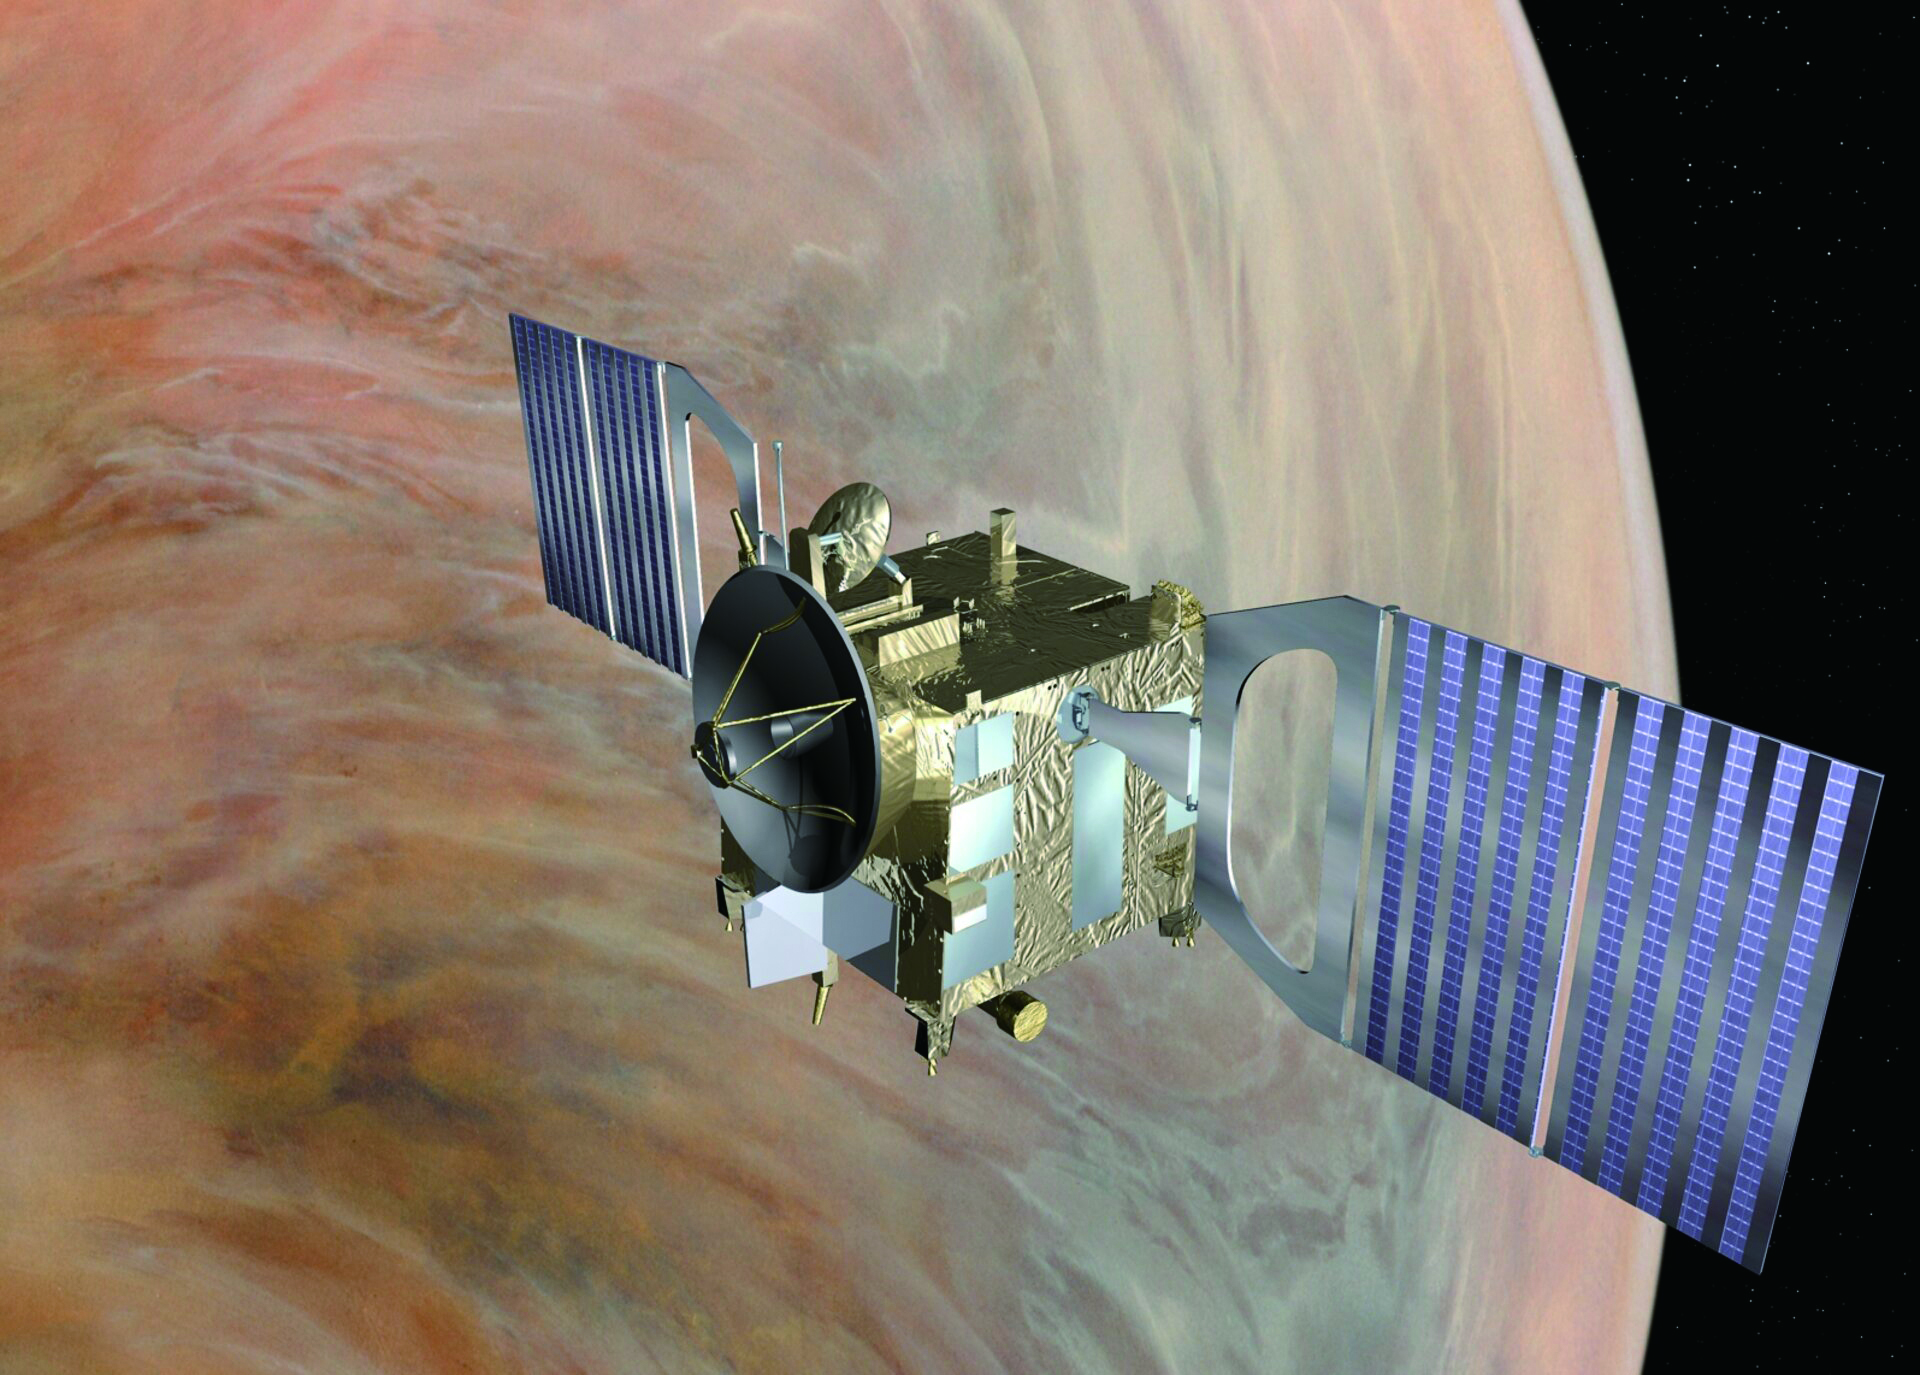  2005년 발사해 2014년 
            임무를 종료한 ESA의 금성  탐사선 ‘비너스 익스프레스 